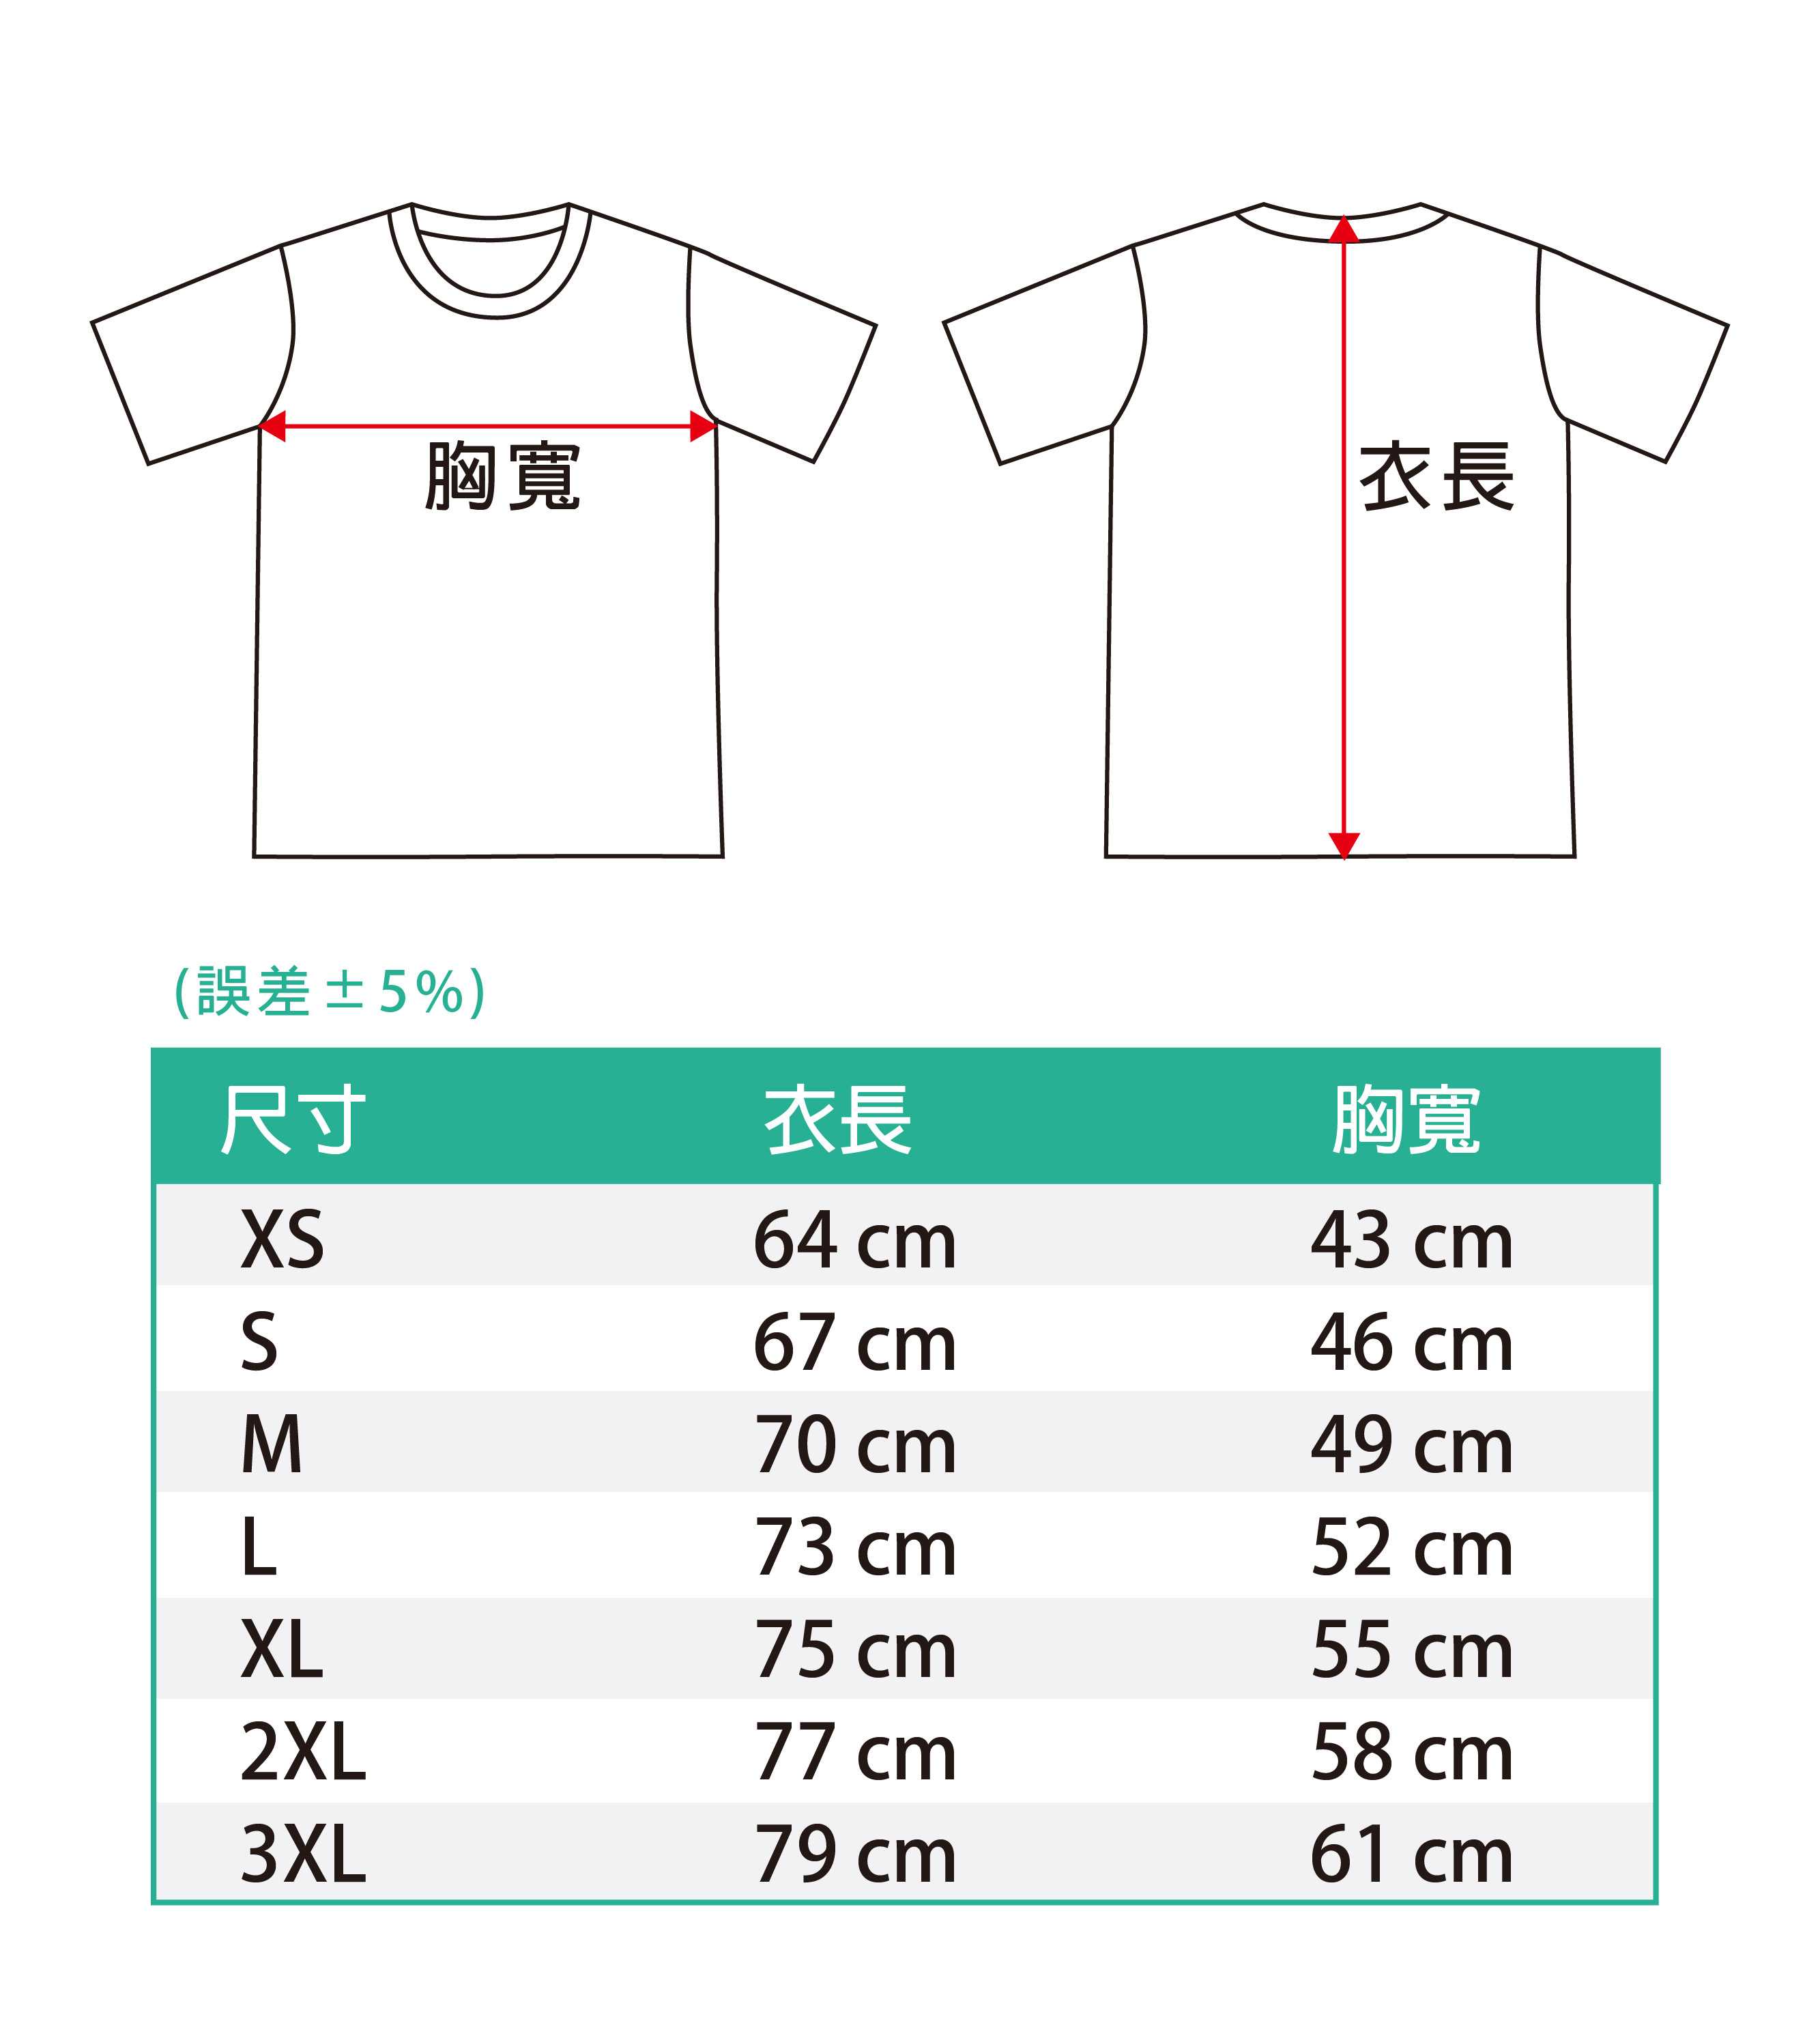 懷疑人生熊貓T恤(白色款)的第5張圖(客製化公司制服、班服製作、團體服製作等示意或作品圖)